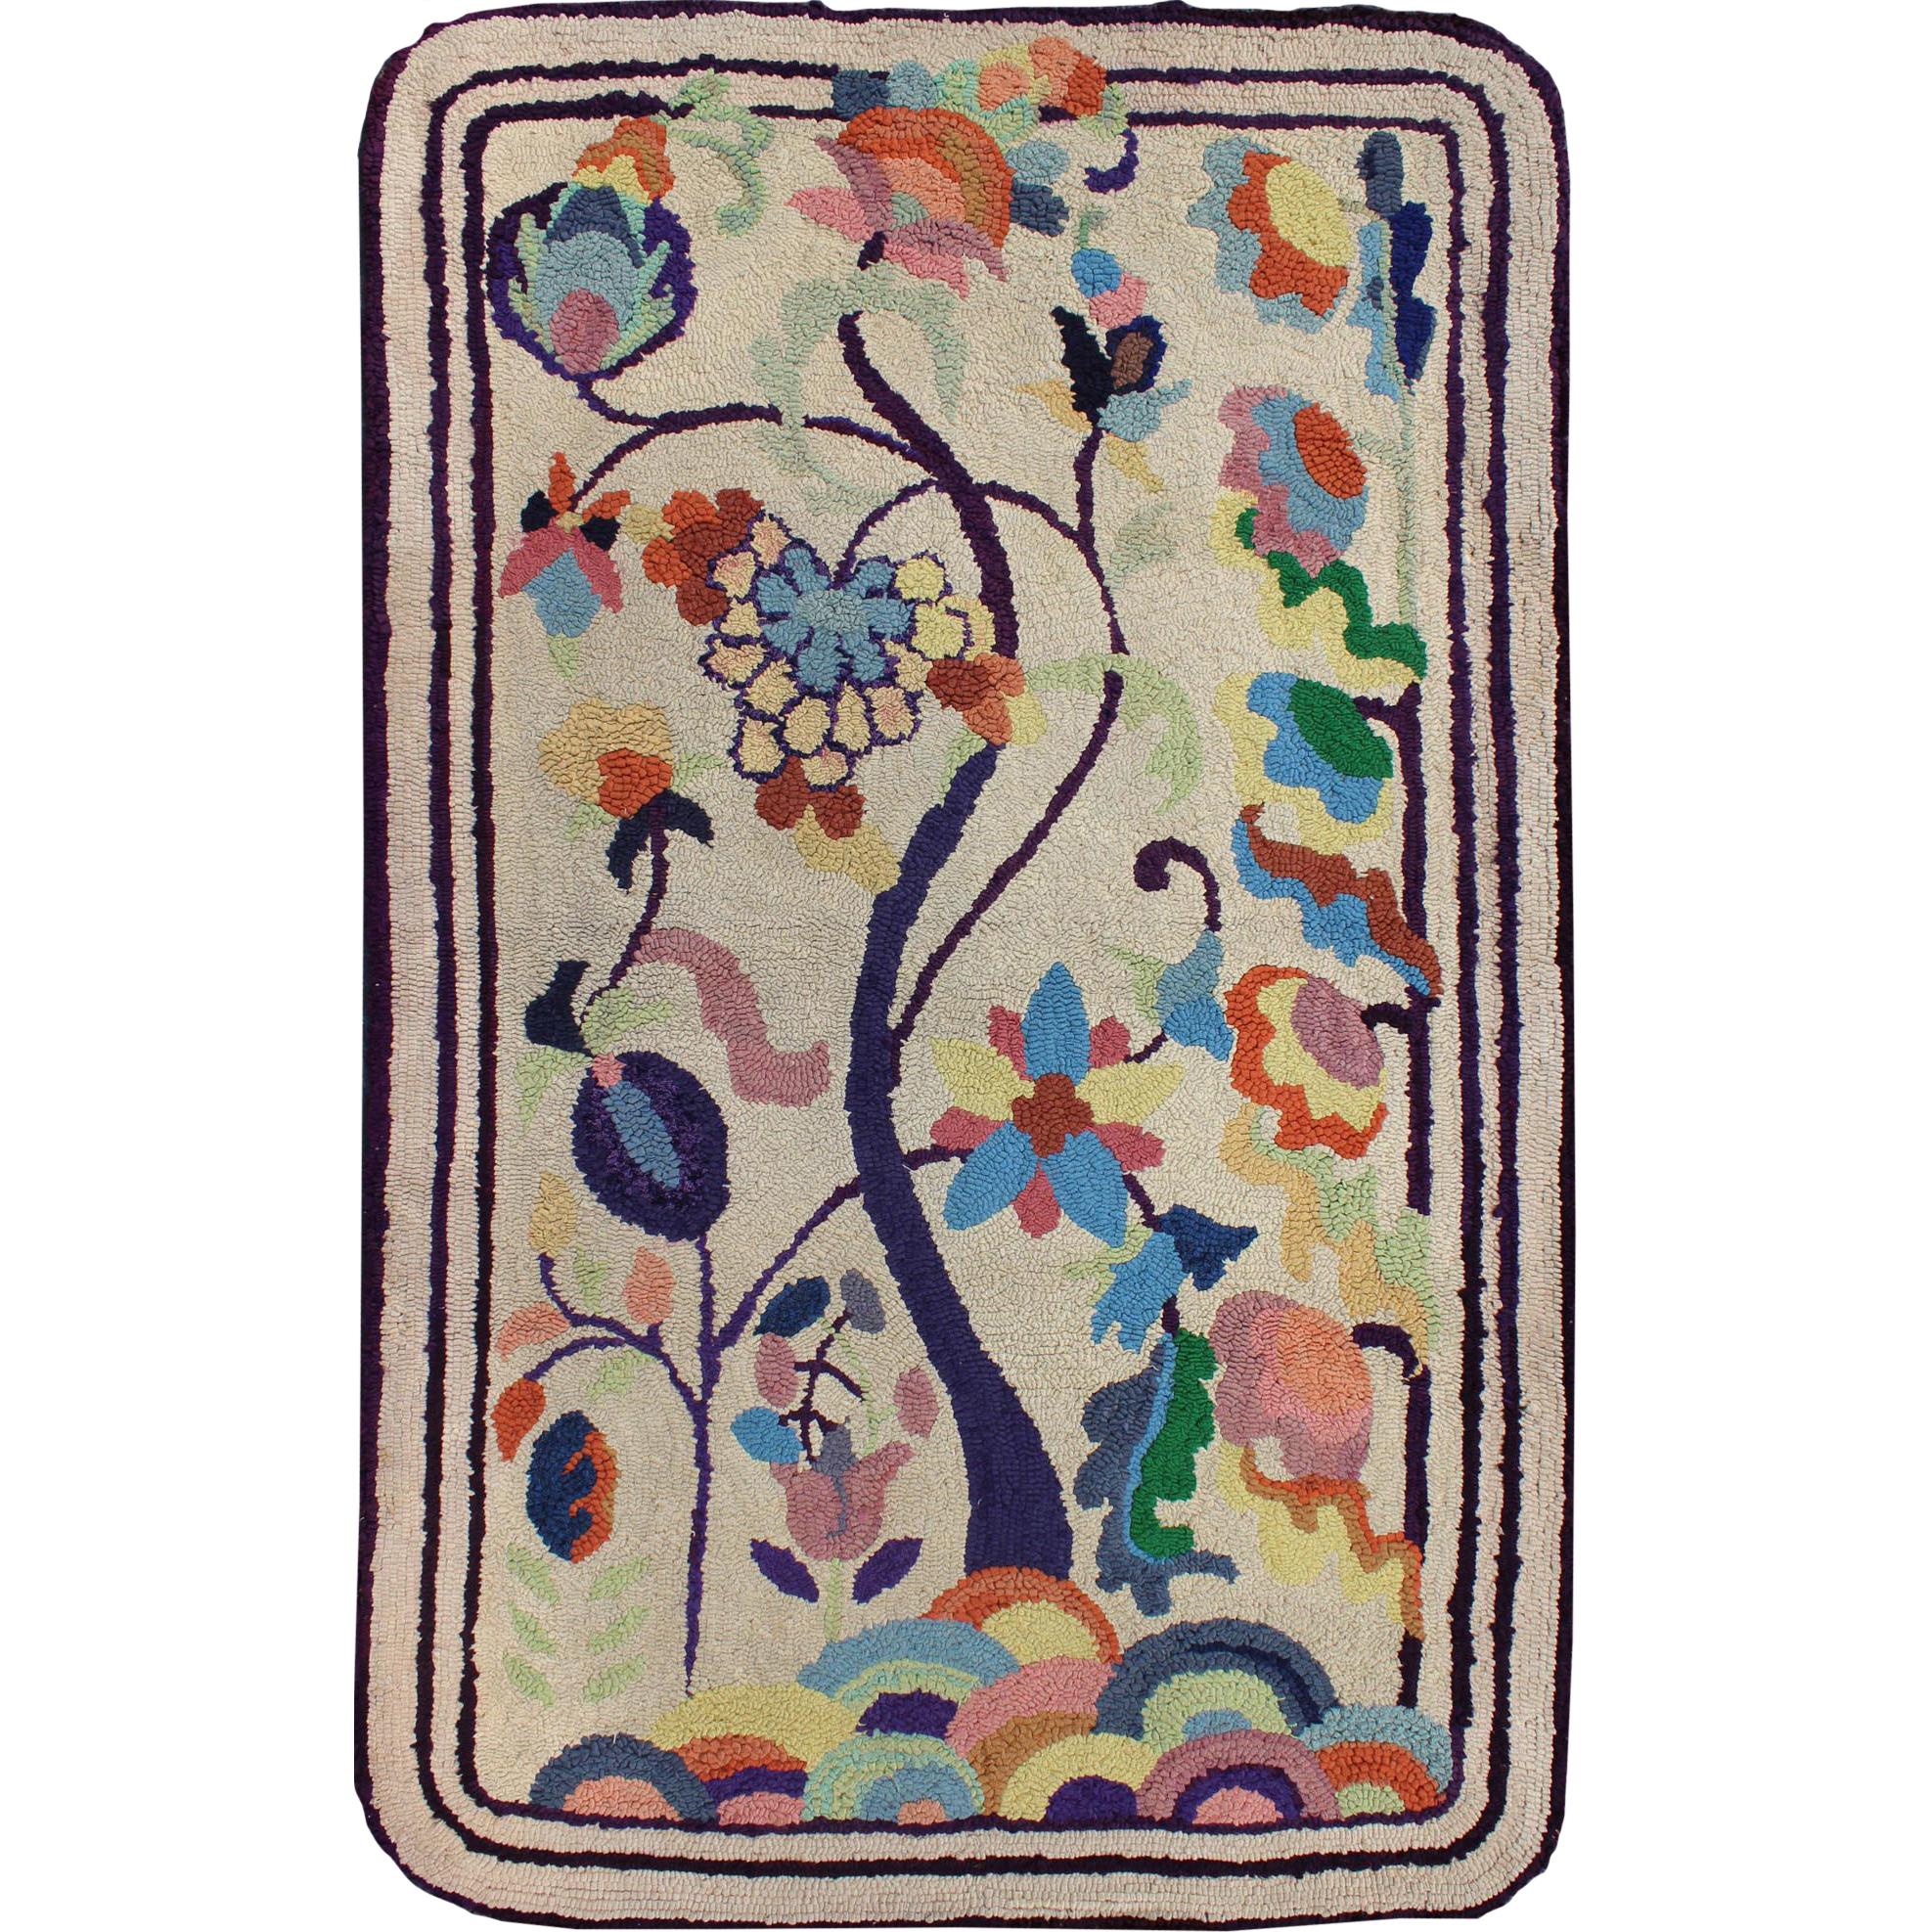 Bunter amerikanischer Vintage-Teppich mit Kapuze und hängenden regenbogenfarbenen Blumen